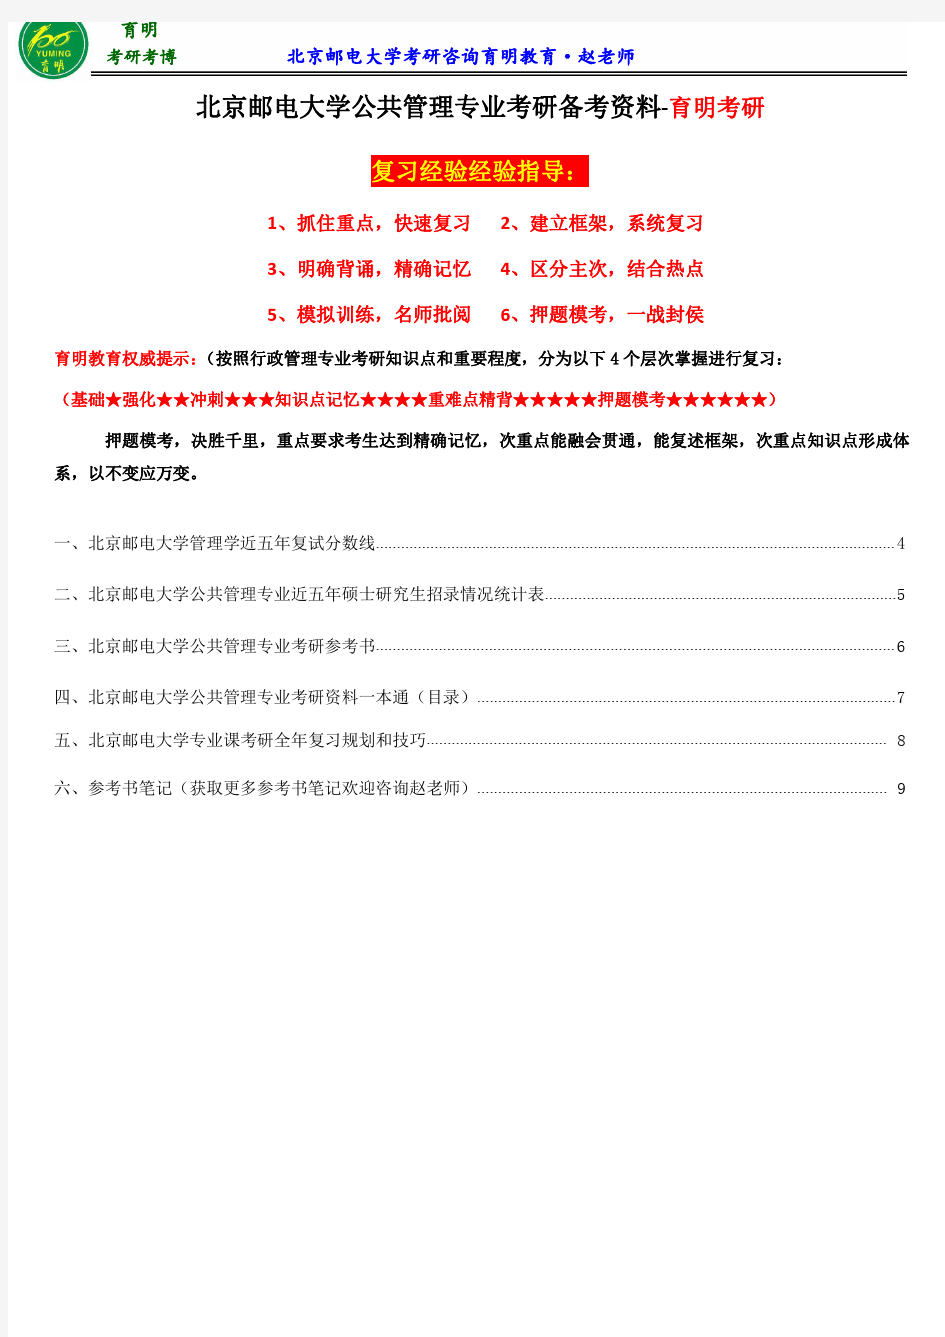 2017北京邮电大学公共管理专业考研参考书、考研笔记、考研复习经验分享、《公共管理学》笔记